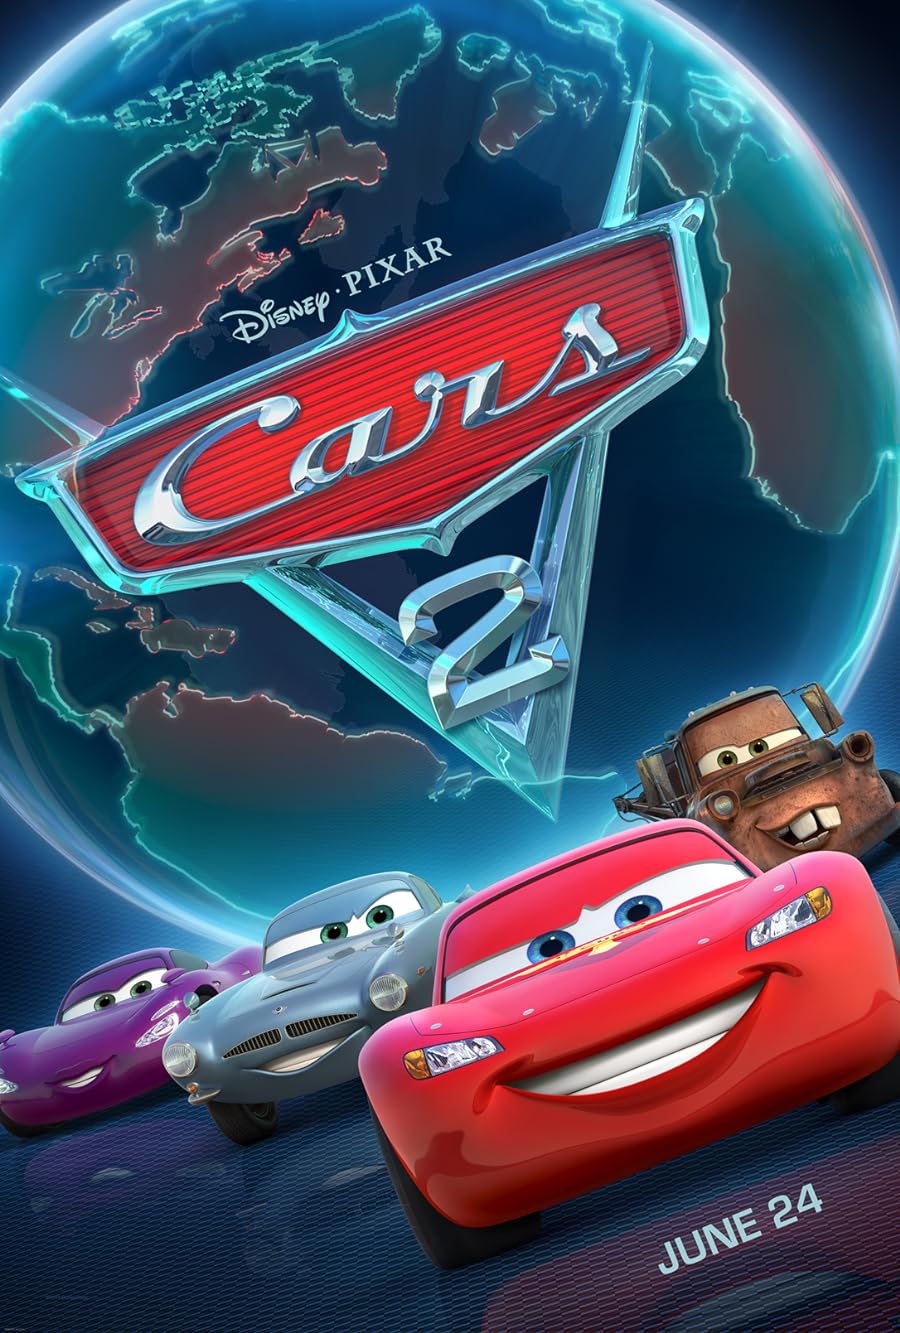 دانلود زیرنویس فارسی انیمیشن Cars 2 2011